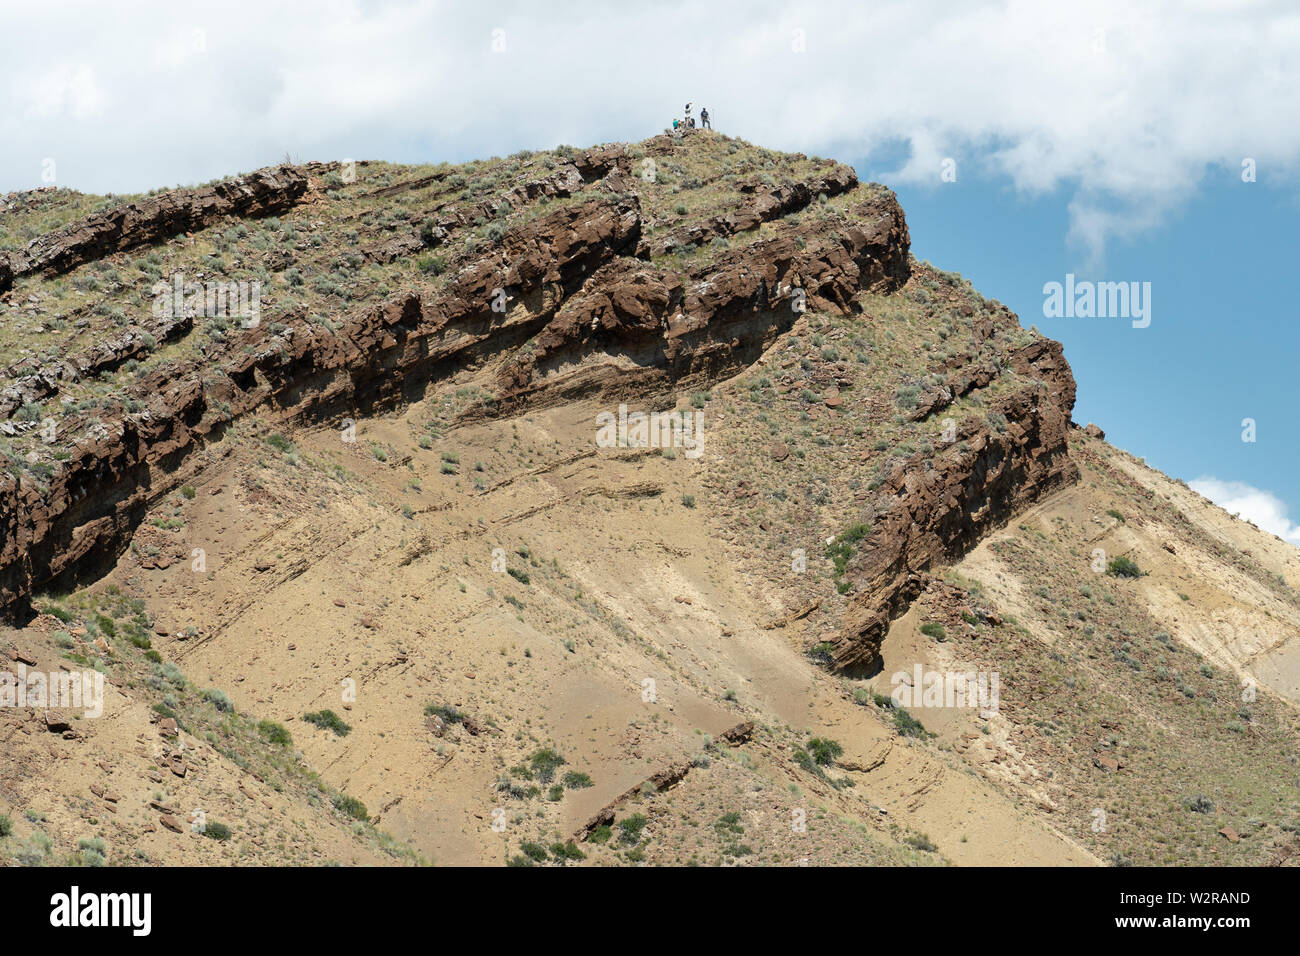 Thrust faults desplazando brown caliza del Triásico Dinwoody Formación, Montana, EE.UU. Foto de stock